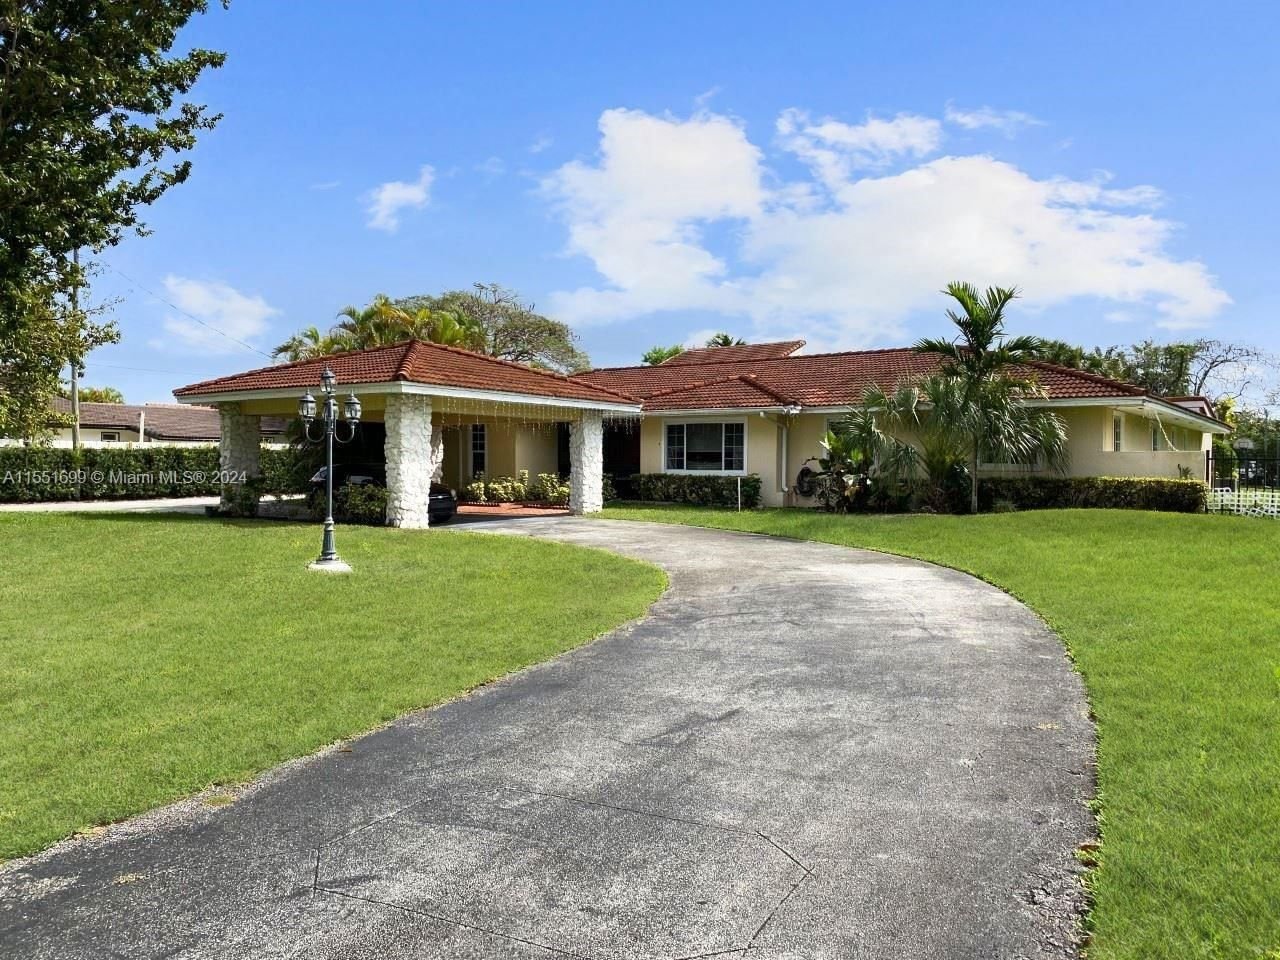 Real estate property located at 2701 113th Ave, Miami-Dade County, GRECARR SUB, Miami, FL